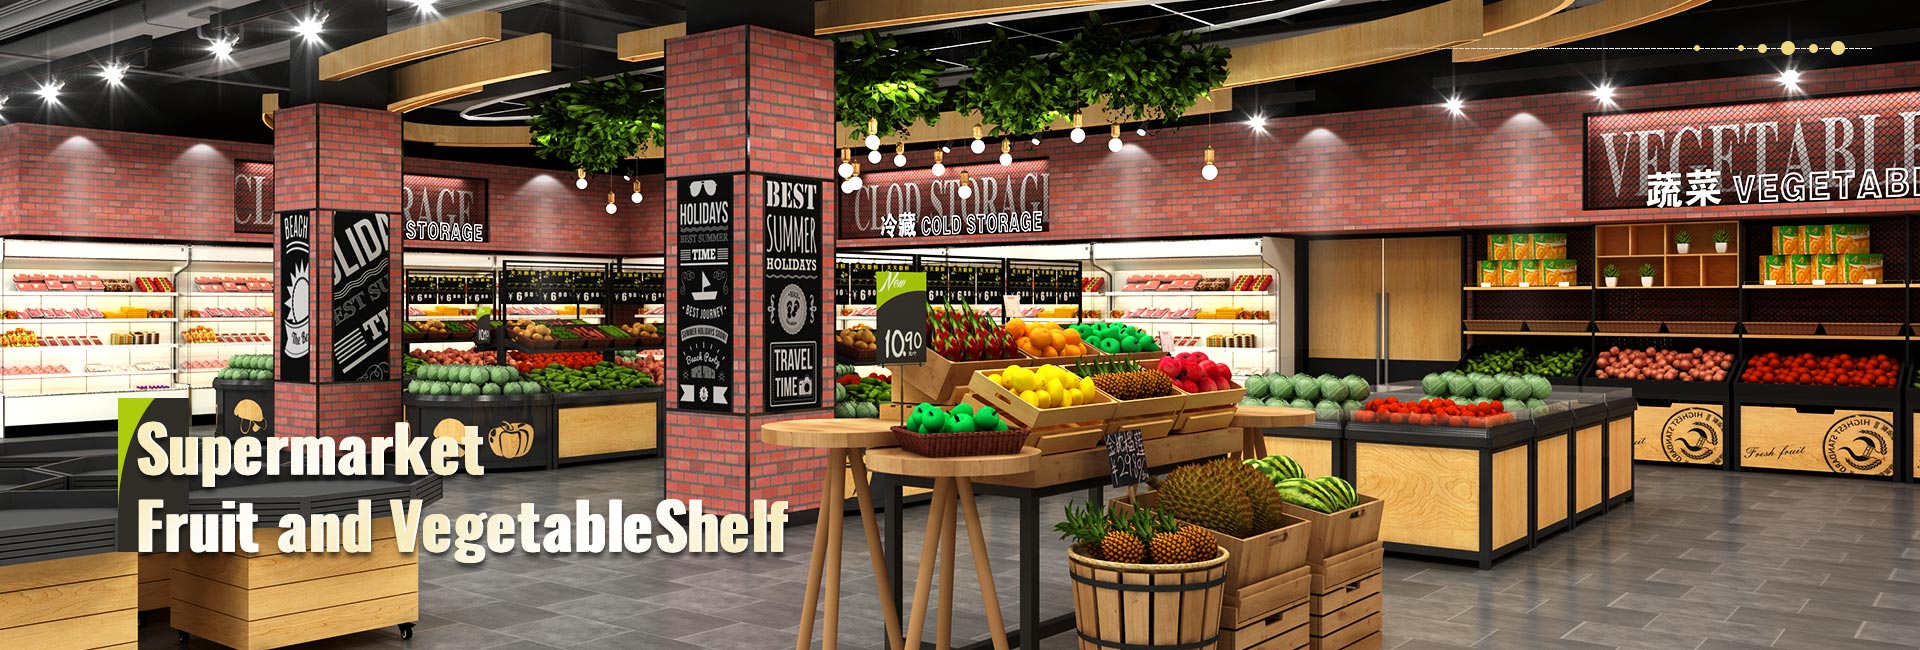 Супермаркет фруктов и овощейПолка